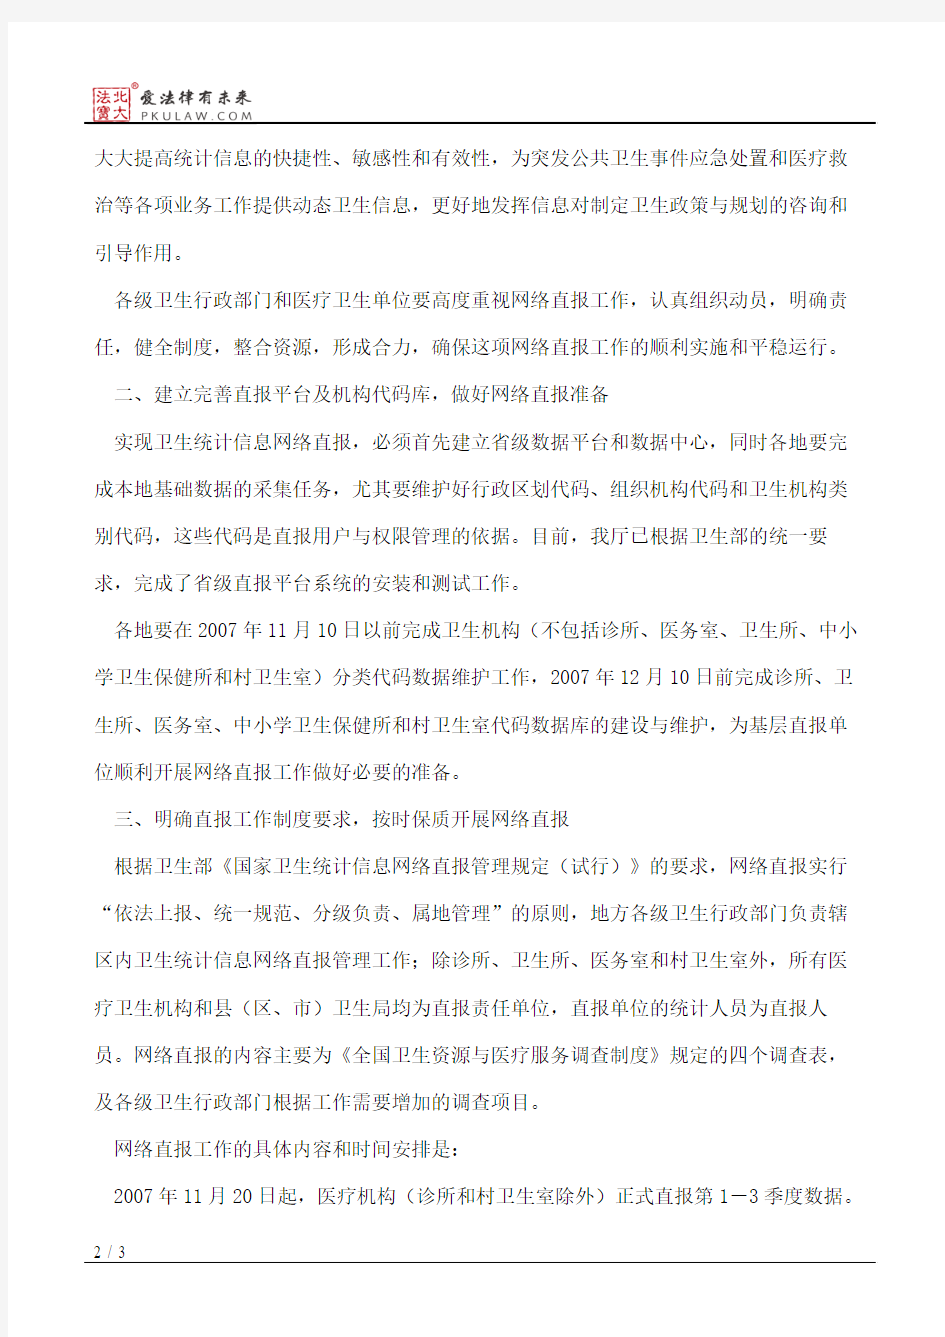 江苏省卫生厅关于实施全省卫生统计信息网络直报工作的通知